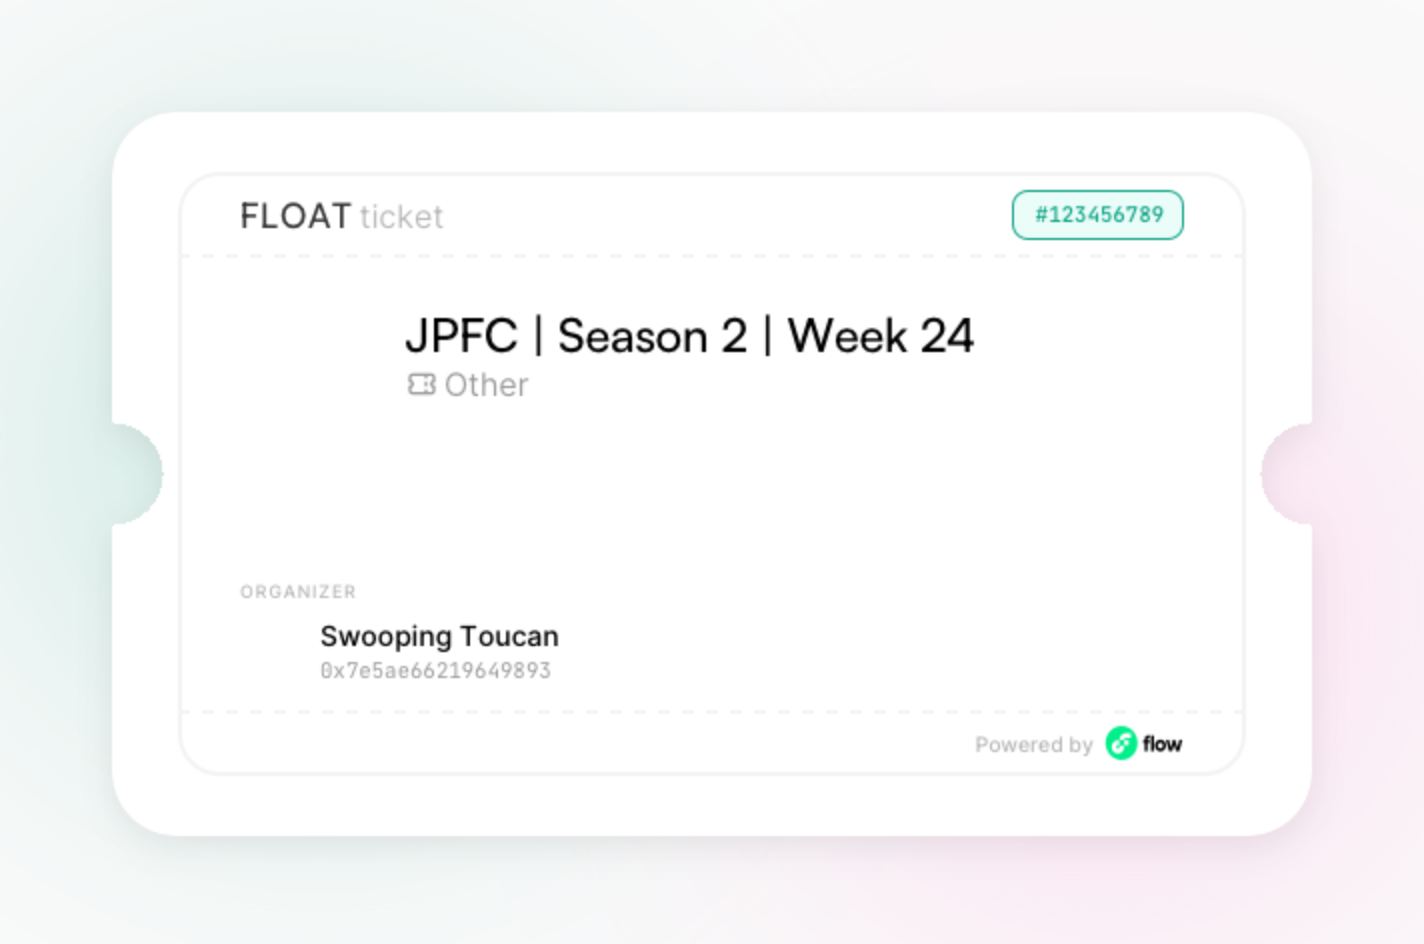 JPFC | Season 2 | Week 24 asset